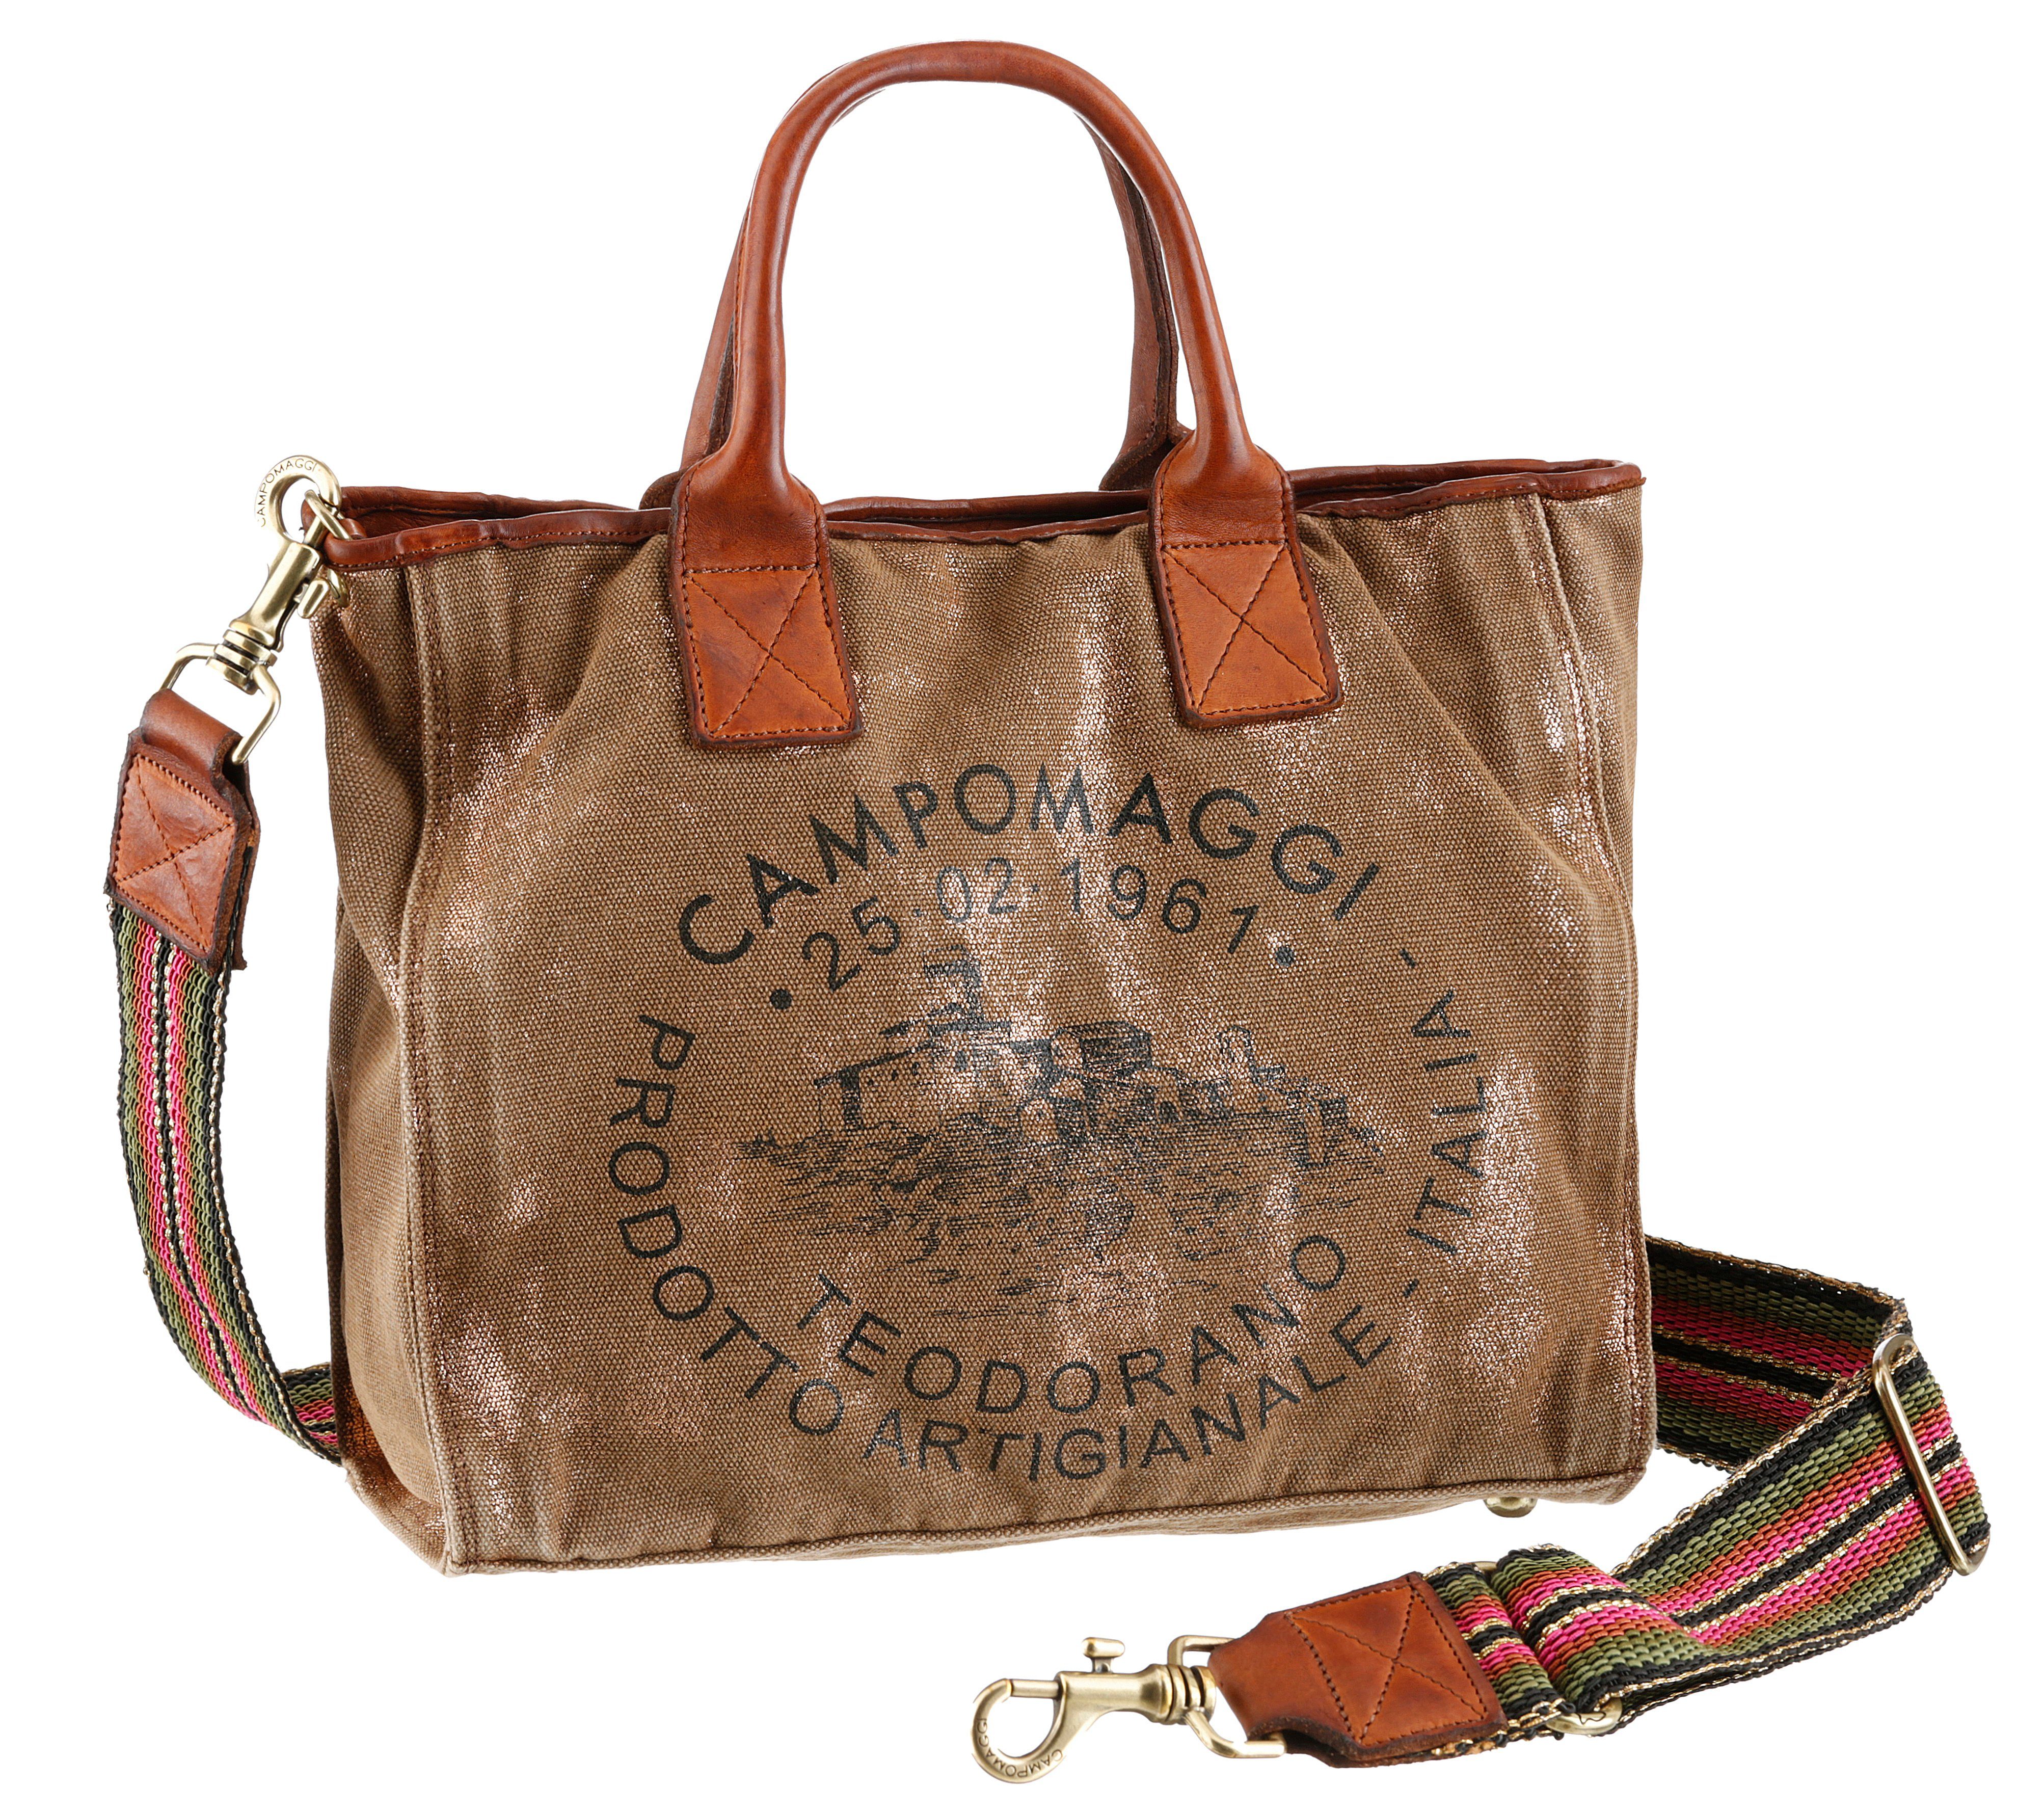 Campomaggi Handtasche online kaufen | OTTO